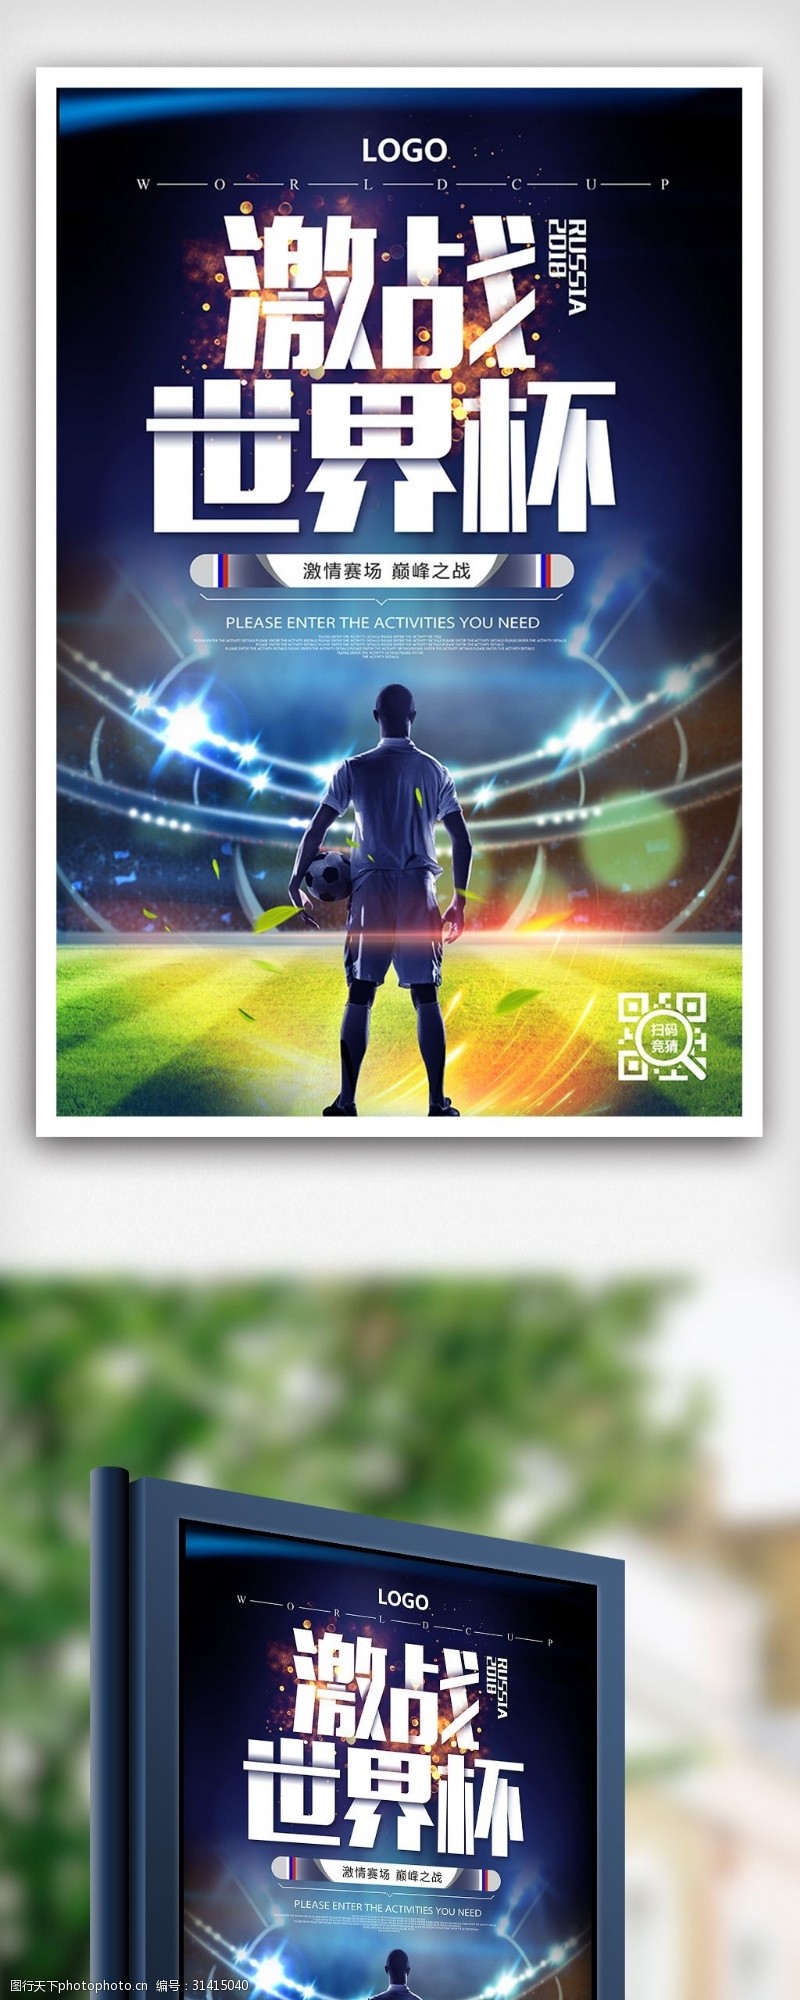 2018激情世界杯创意海报设计